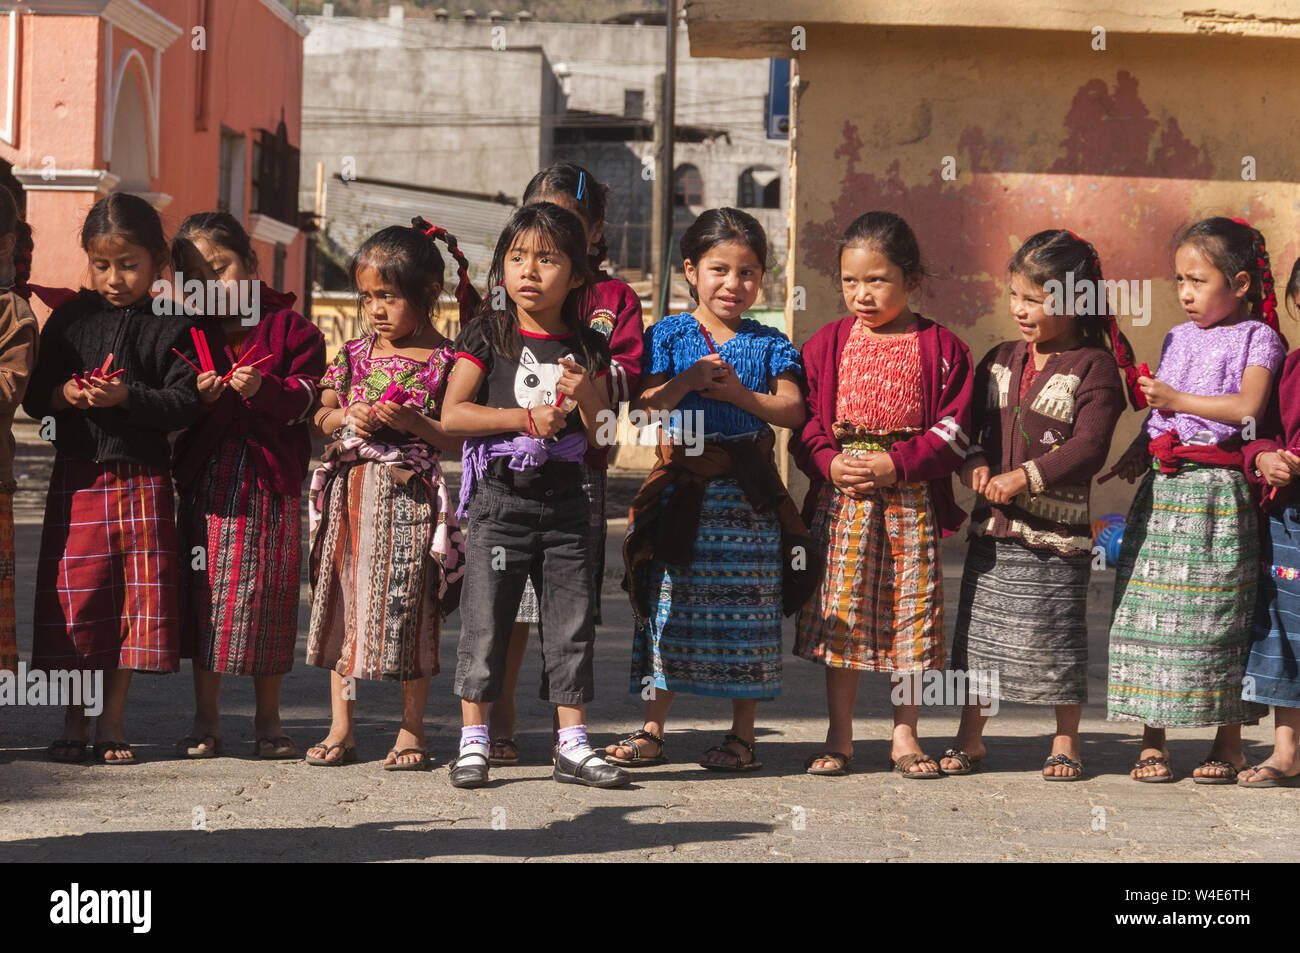 Guatemala, Santa Maria de Jesus, enfants guatémaltèques jouer pick up sticks game Banque D'Images